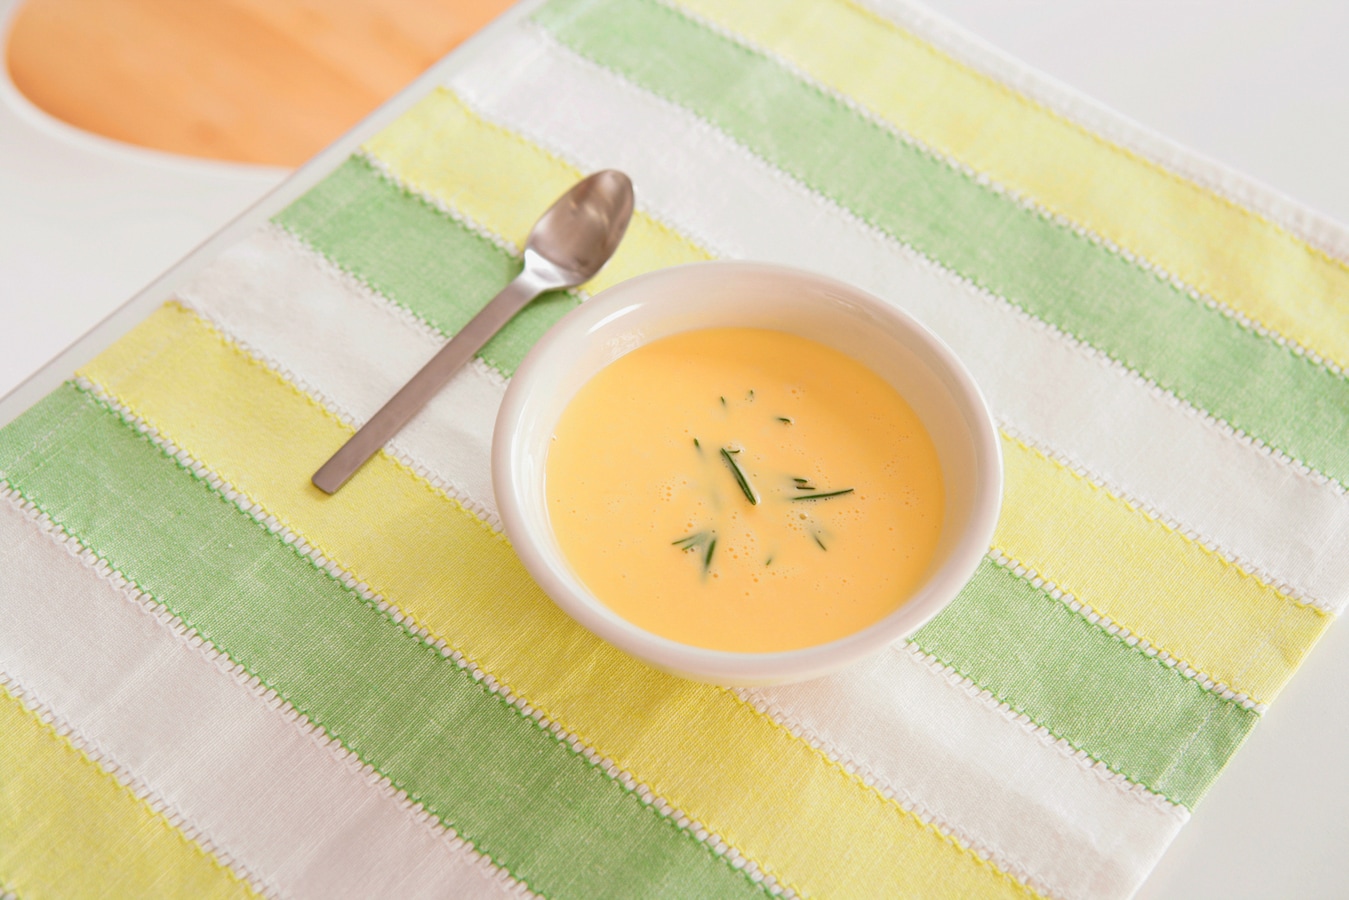 スープジャーで作るおかゆ弁当 最速超簡単でおすすめ 時短生活 All About